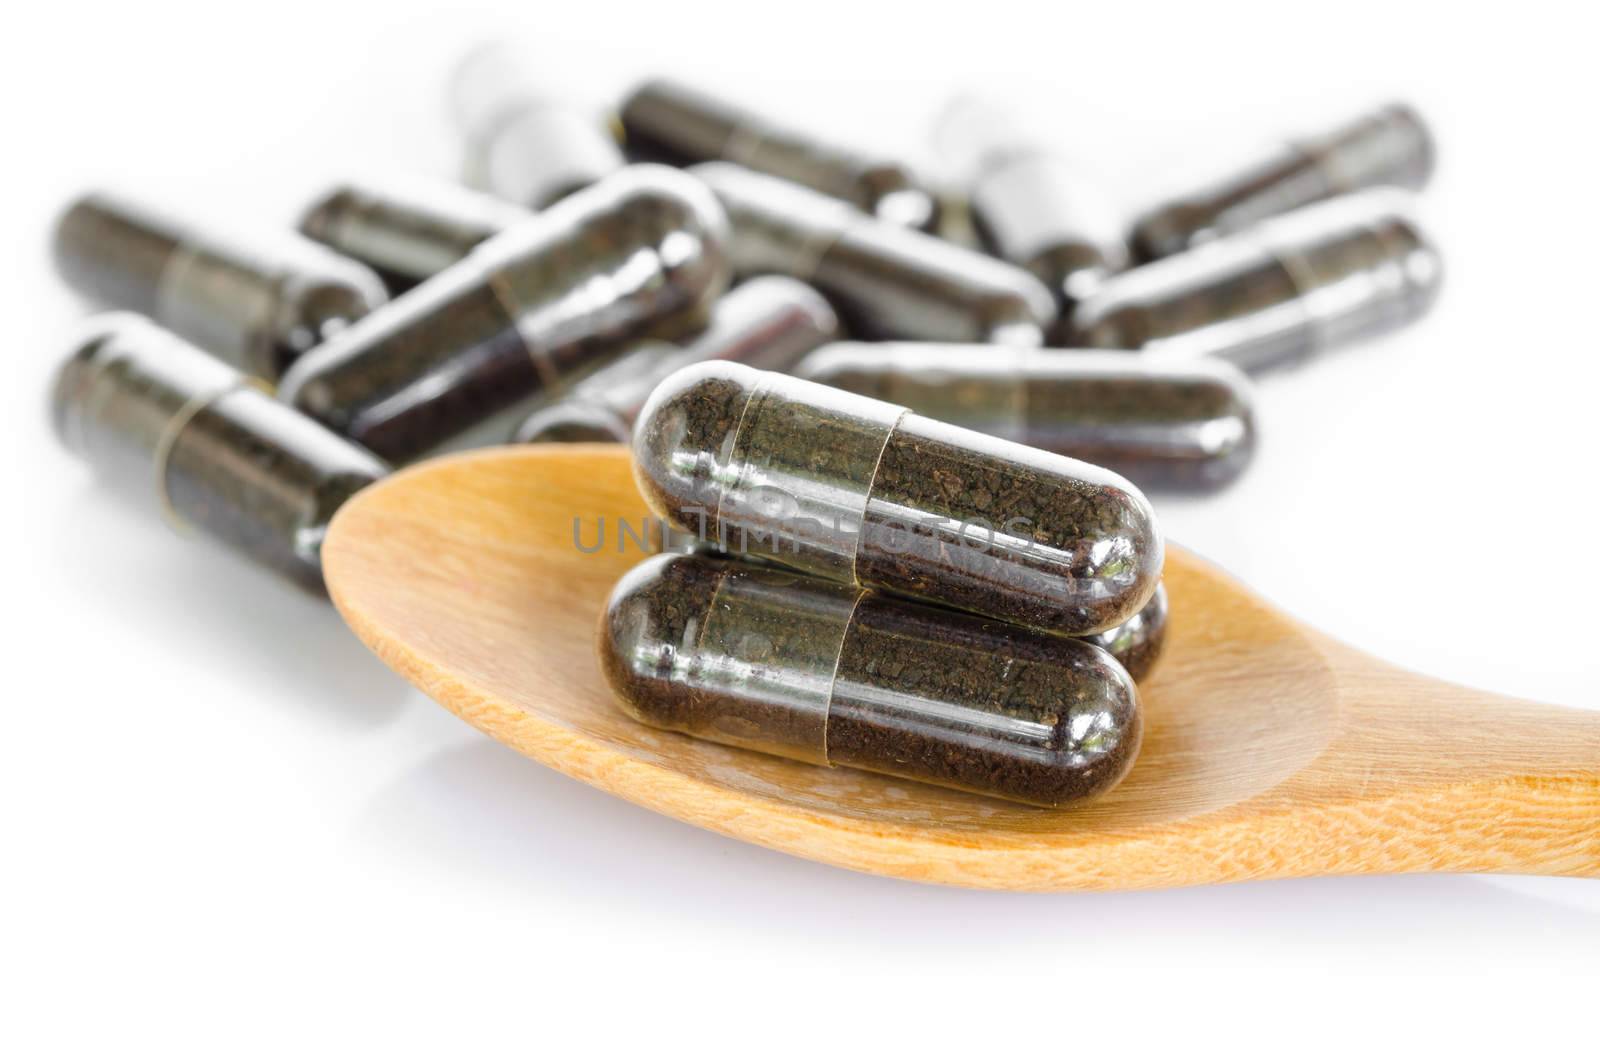 Black herbal capsule drug in wooden spoon. by Gamjai